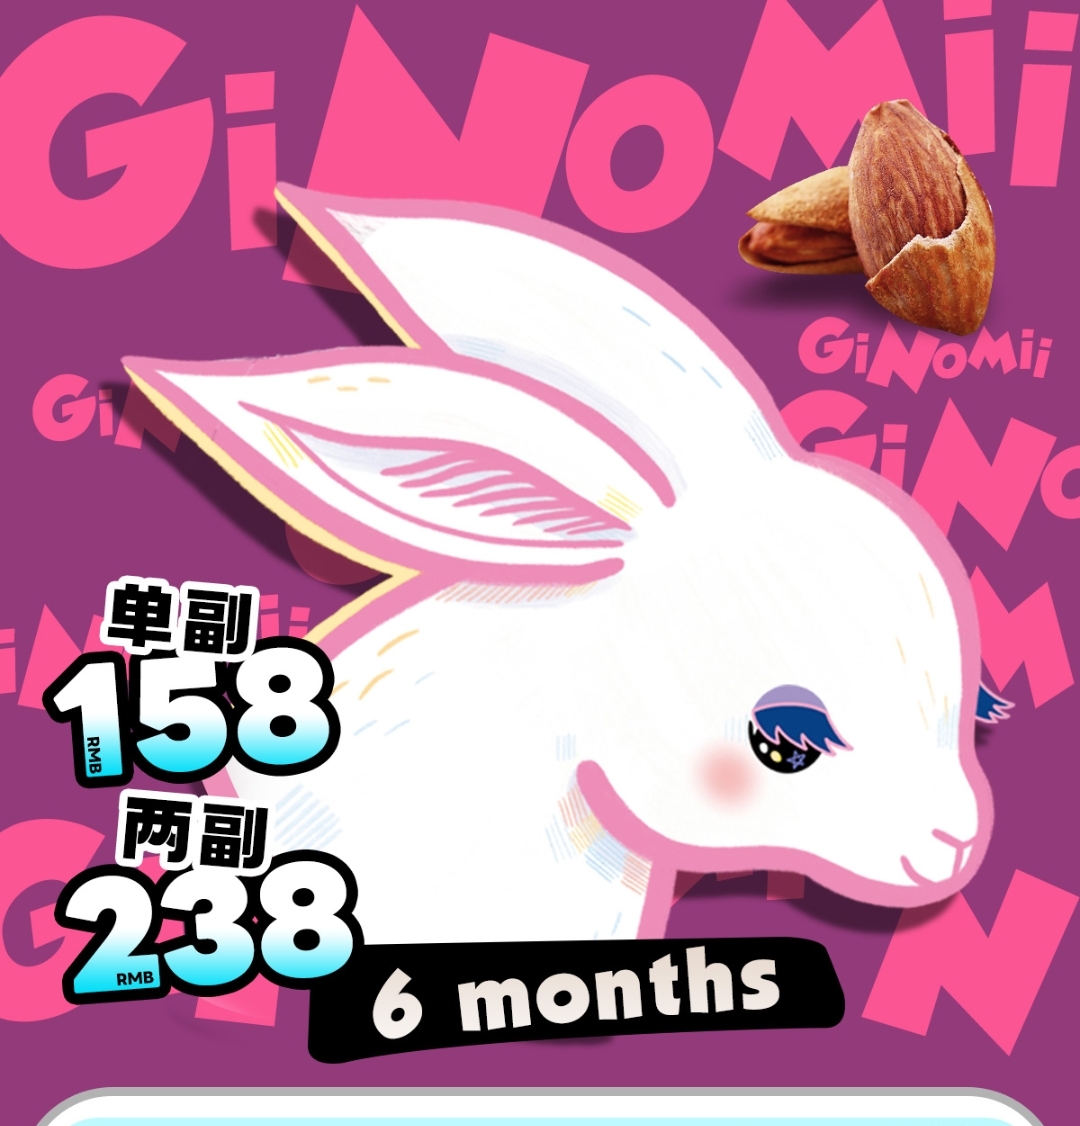 【半年抛上新】GINOMII 统治五月企划 重磅单品上线助力 Heli咖喱果子🌰 #细边电眼深摩卡